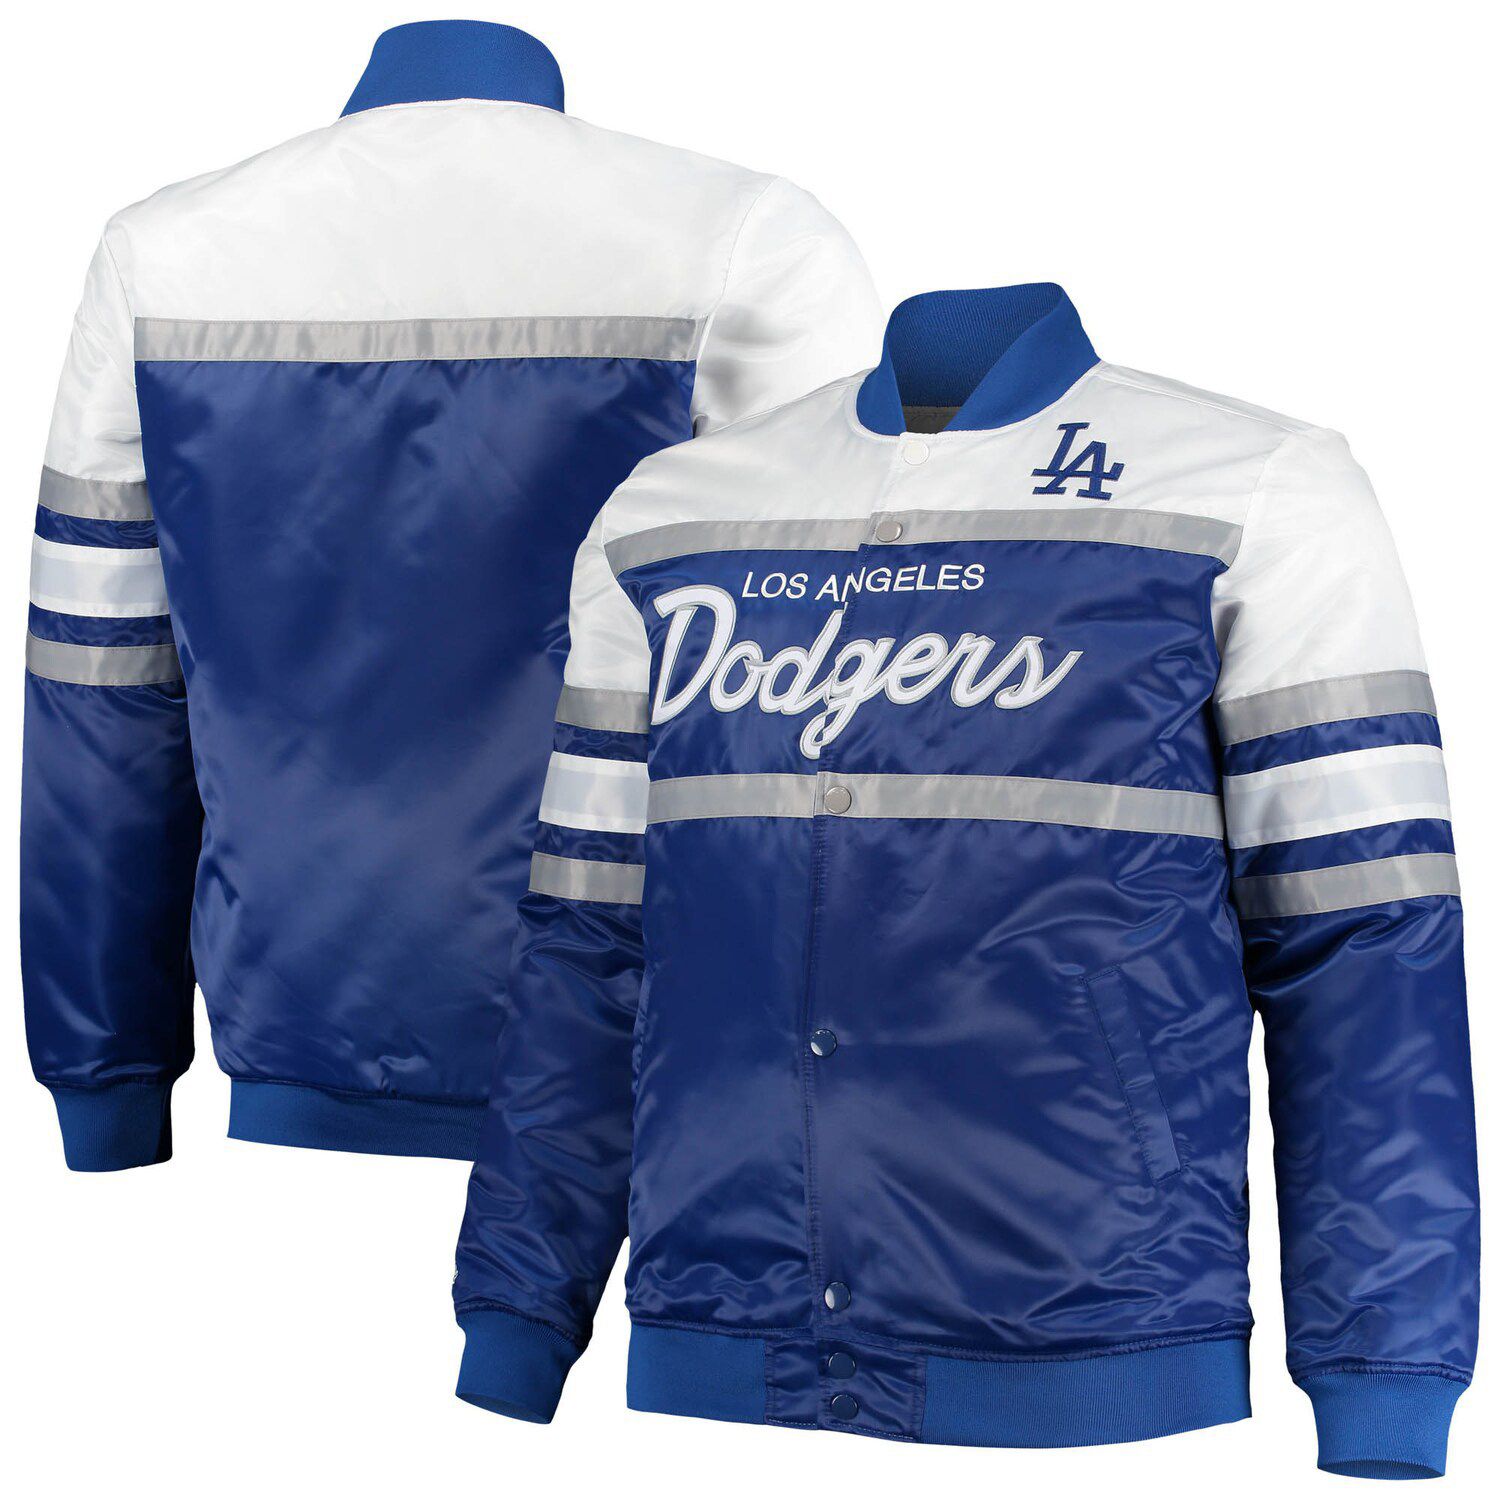 La Dodgers Blended Letterman White and Blue Jacket